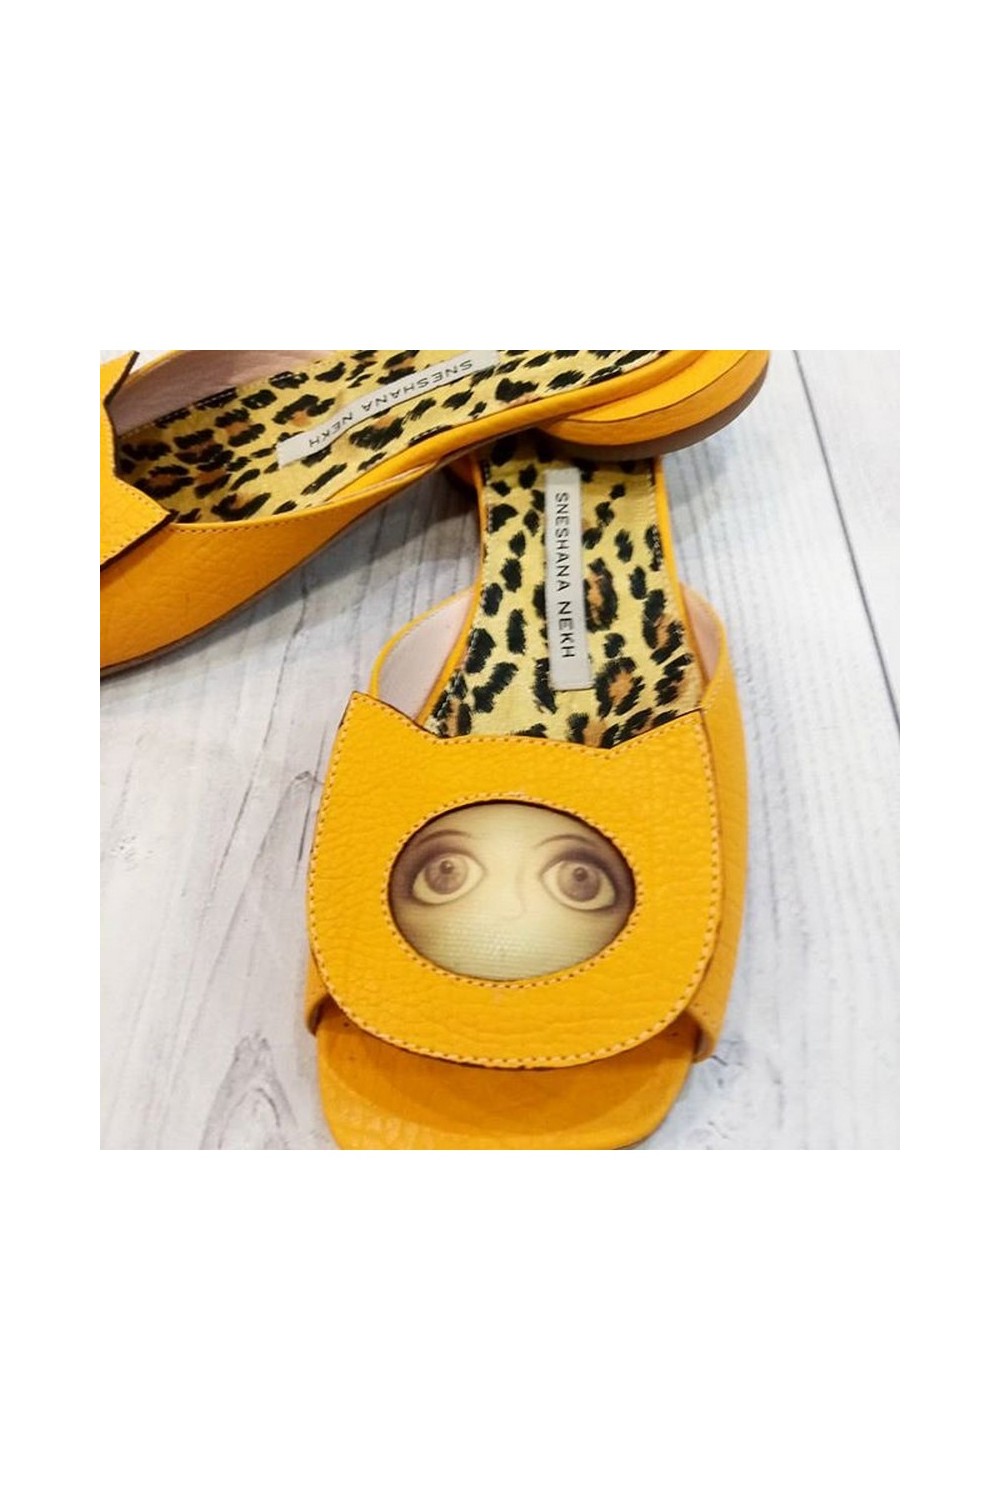 Buy Comfortable Casual Leather Women Flip Flops Open Toe Leopard Print Low Heel